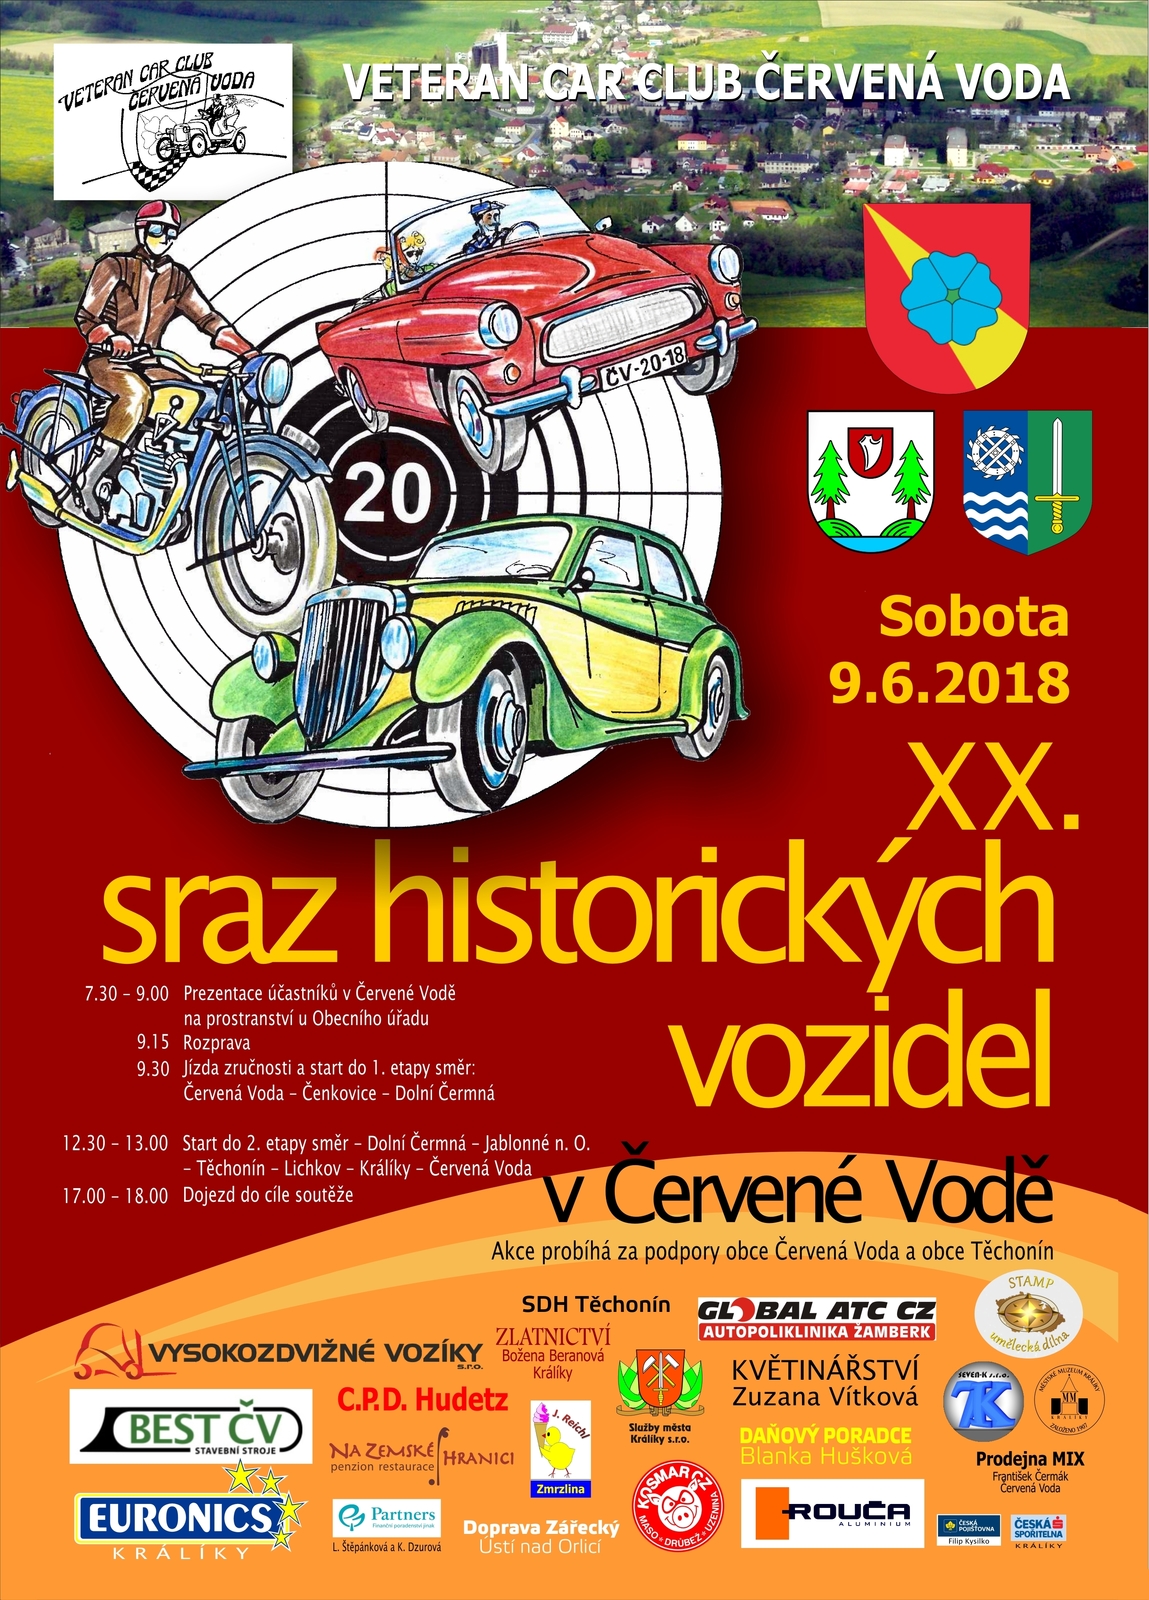 Veterán klub plakát Červená Voda 2012.JPG